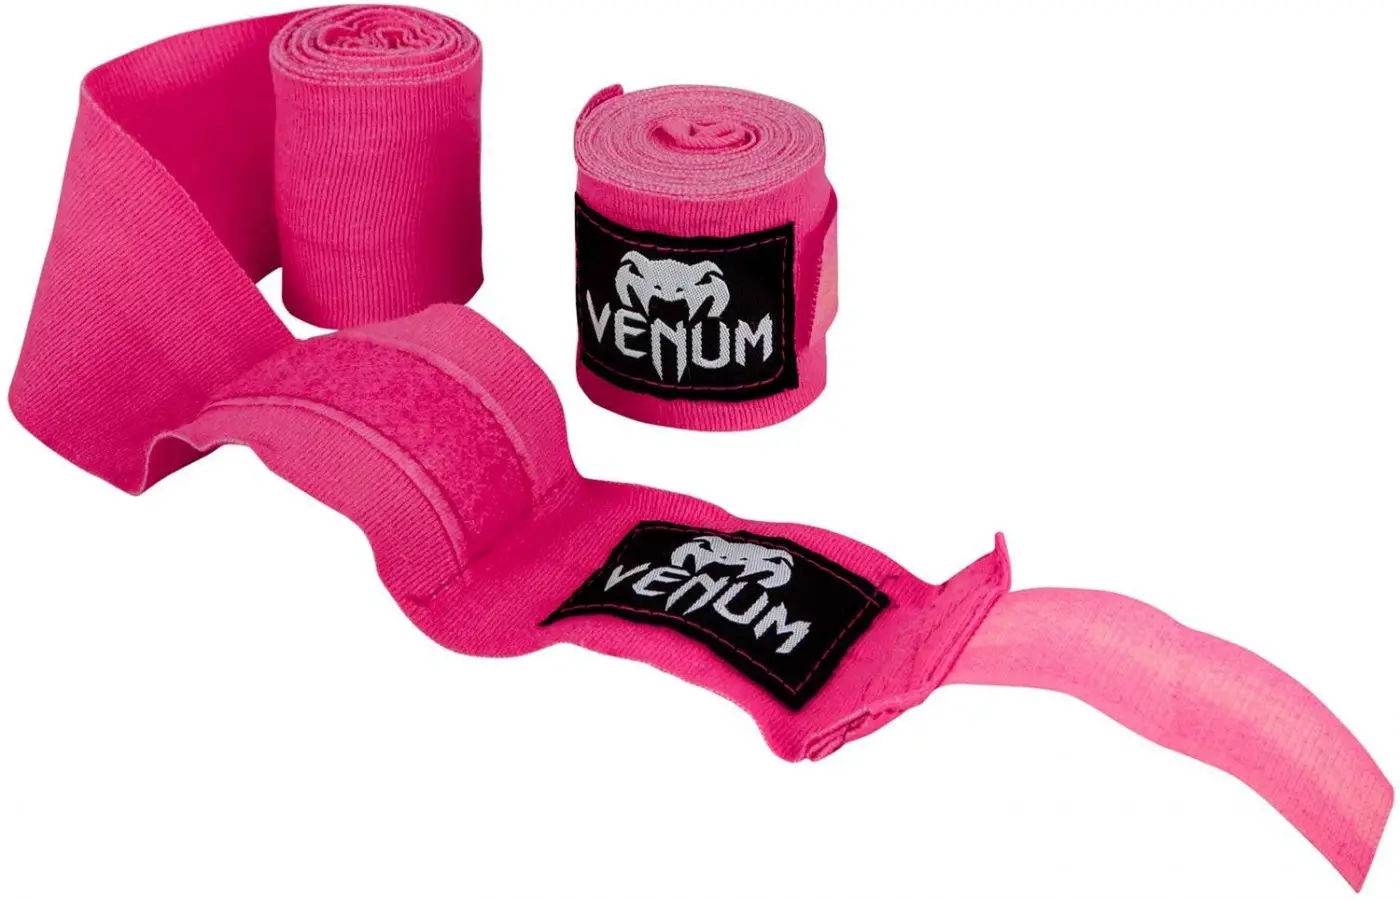 Venum wraps pink